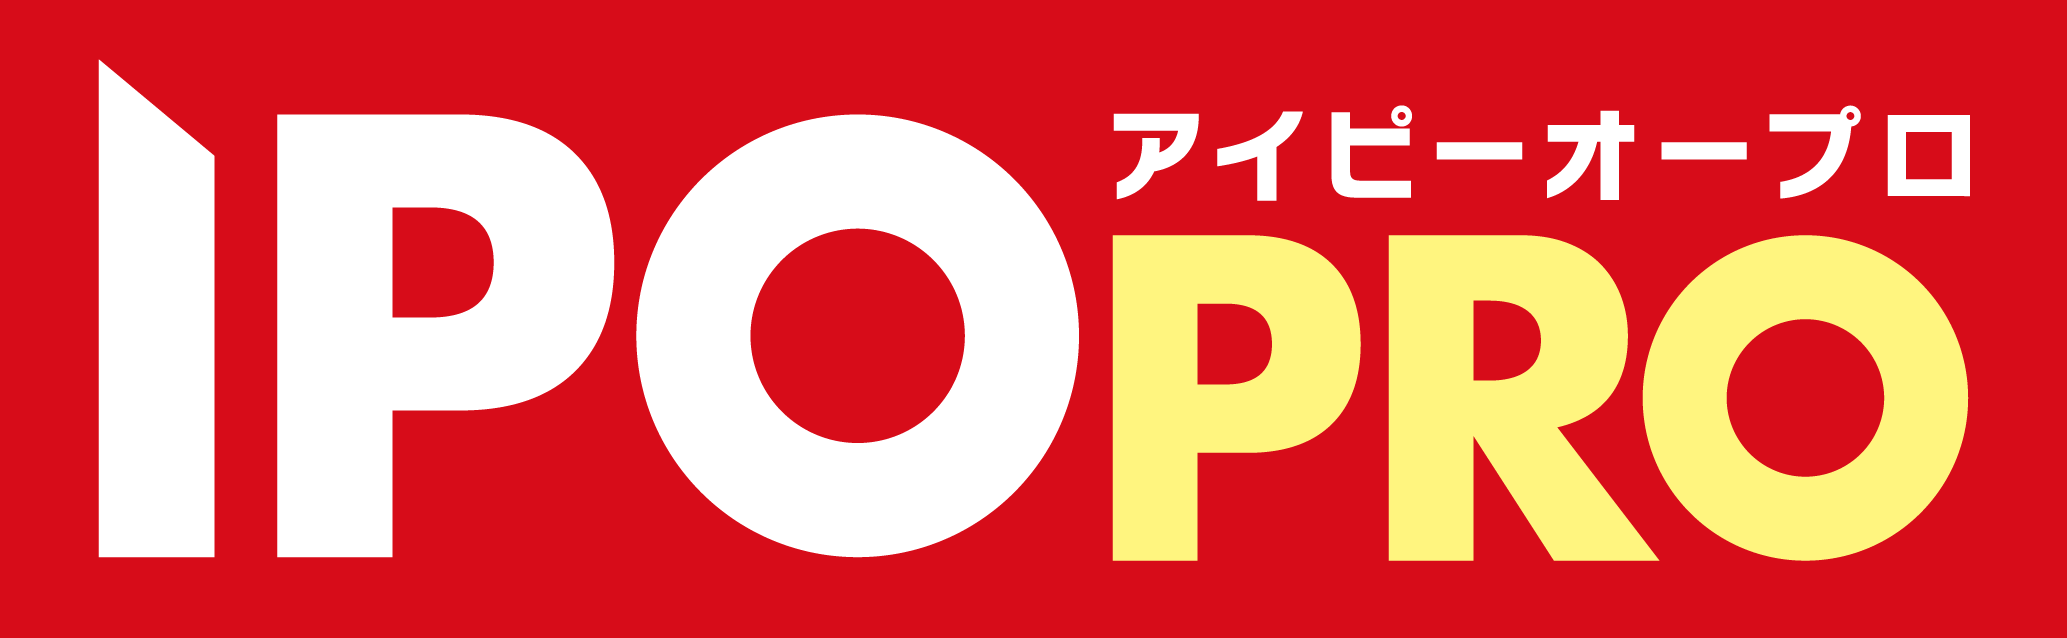 ipopro-logo.png